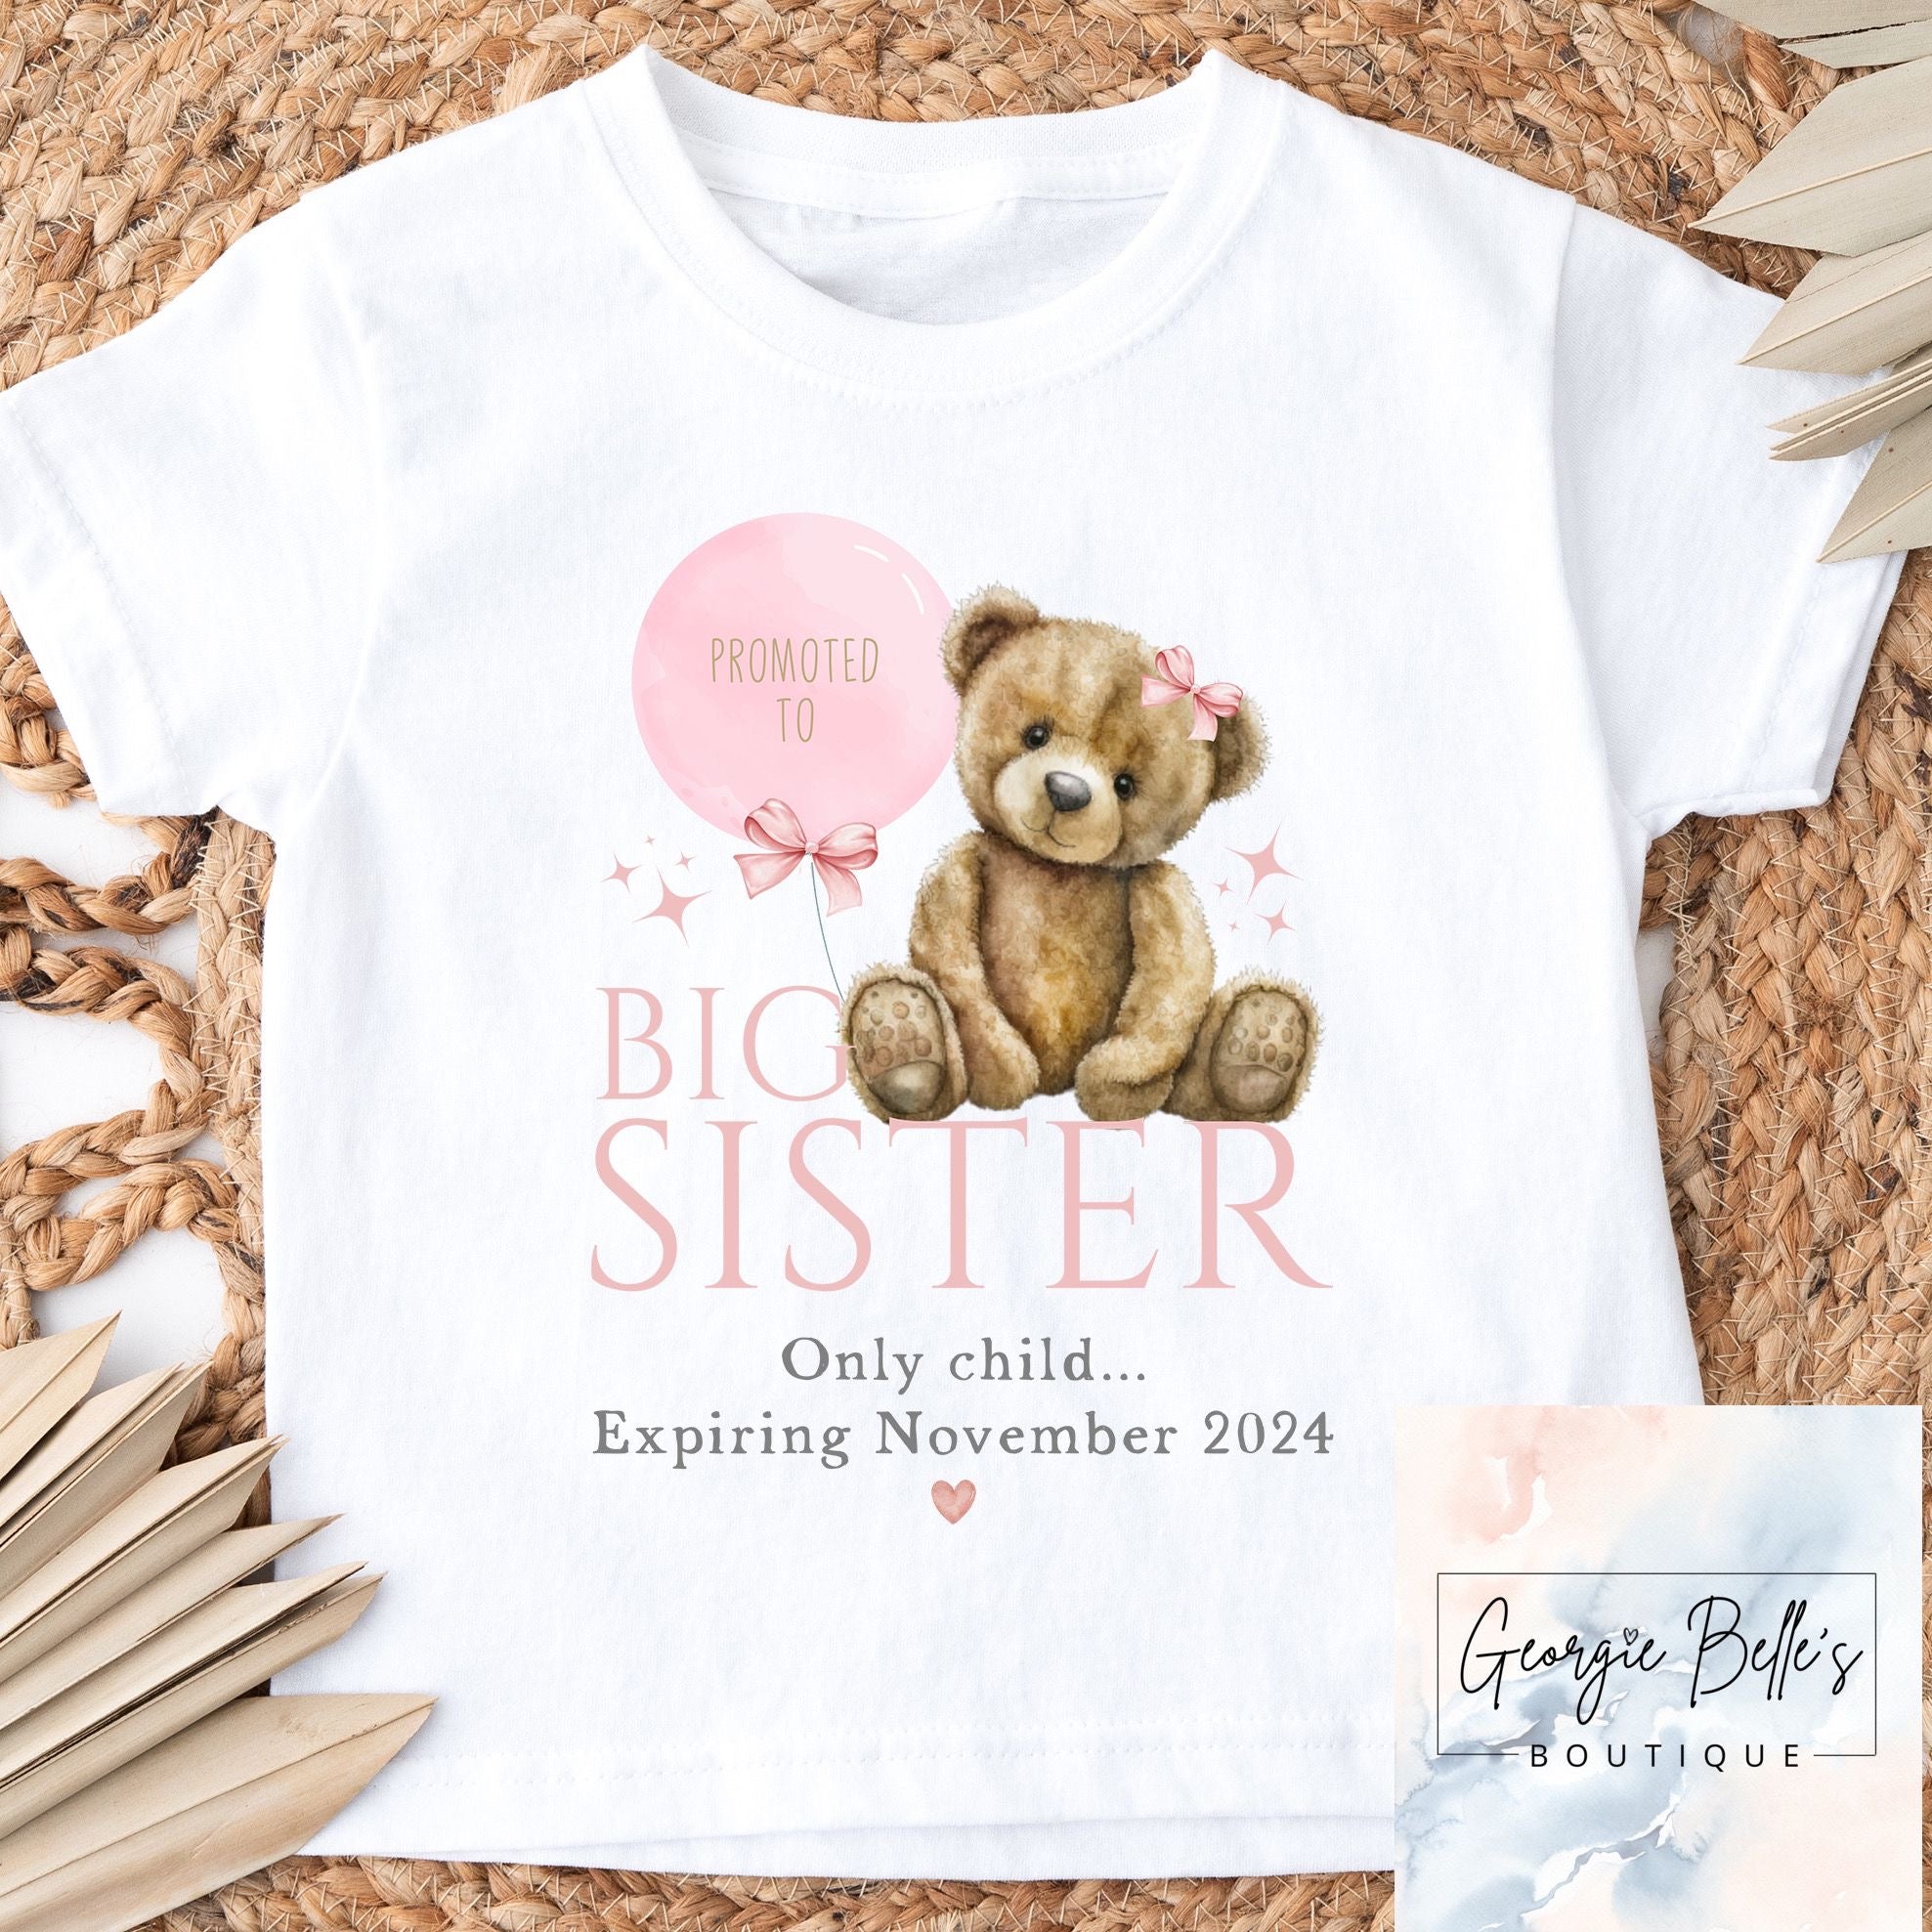 Big Sister Announcement T-Shirt - Bear Design